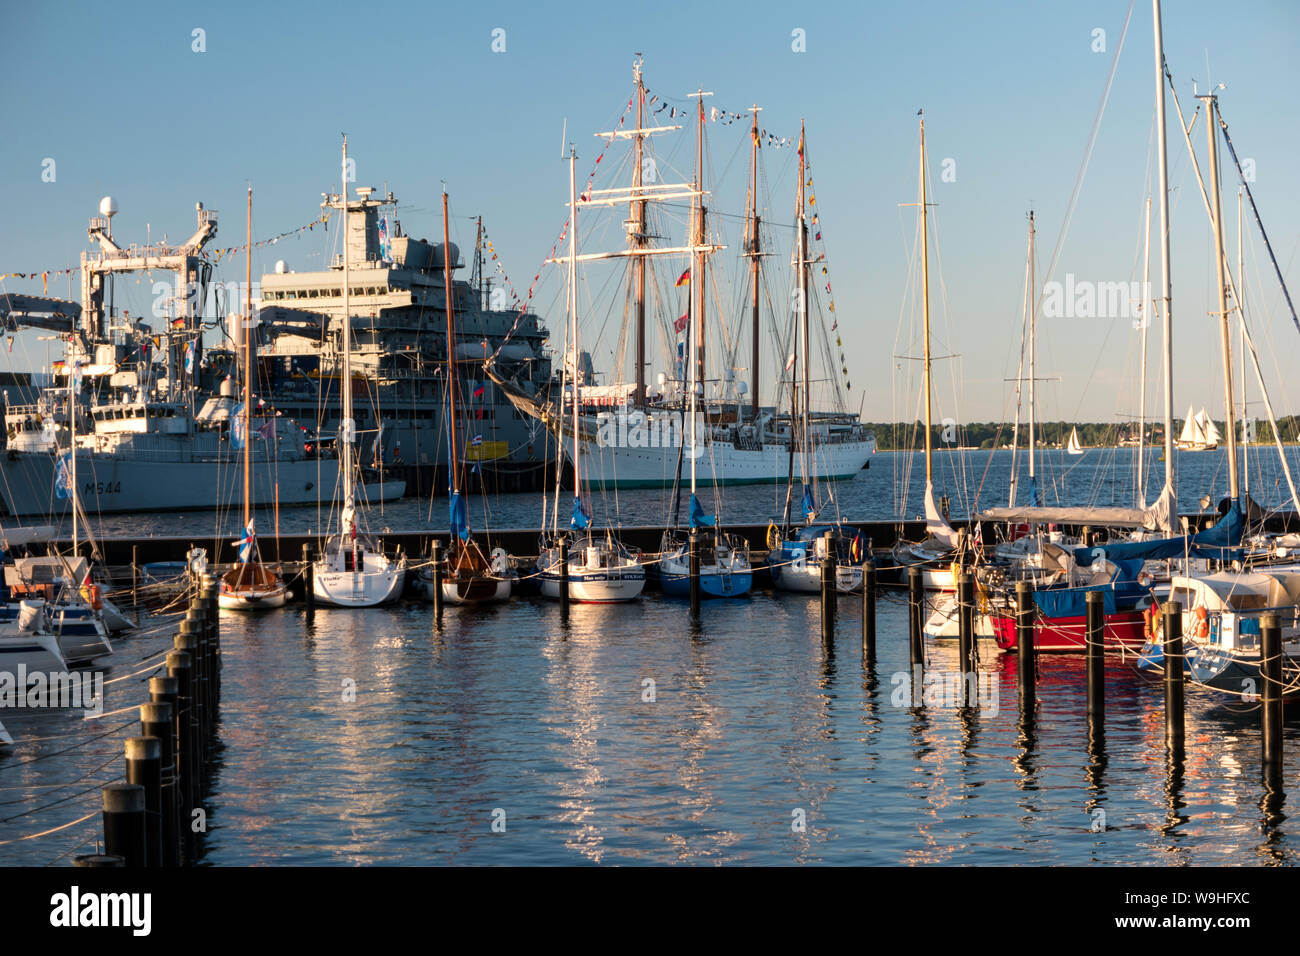 KIEL, Deutschland - Juni 22, 2019: Während der Kieler Woche 2019 den Marinestützpunkt Kiel organisiert eine offene Schiff im Tirpitzhafen. Illustrative editoria Stockfoto